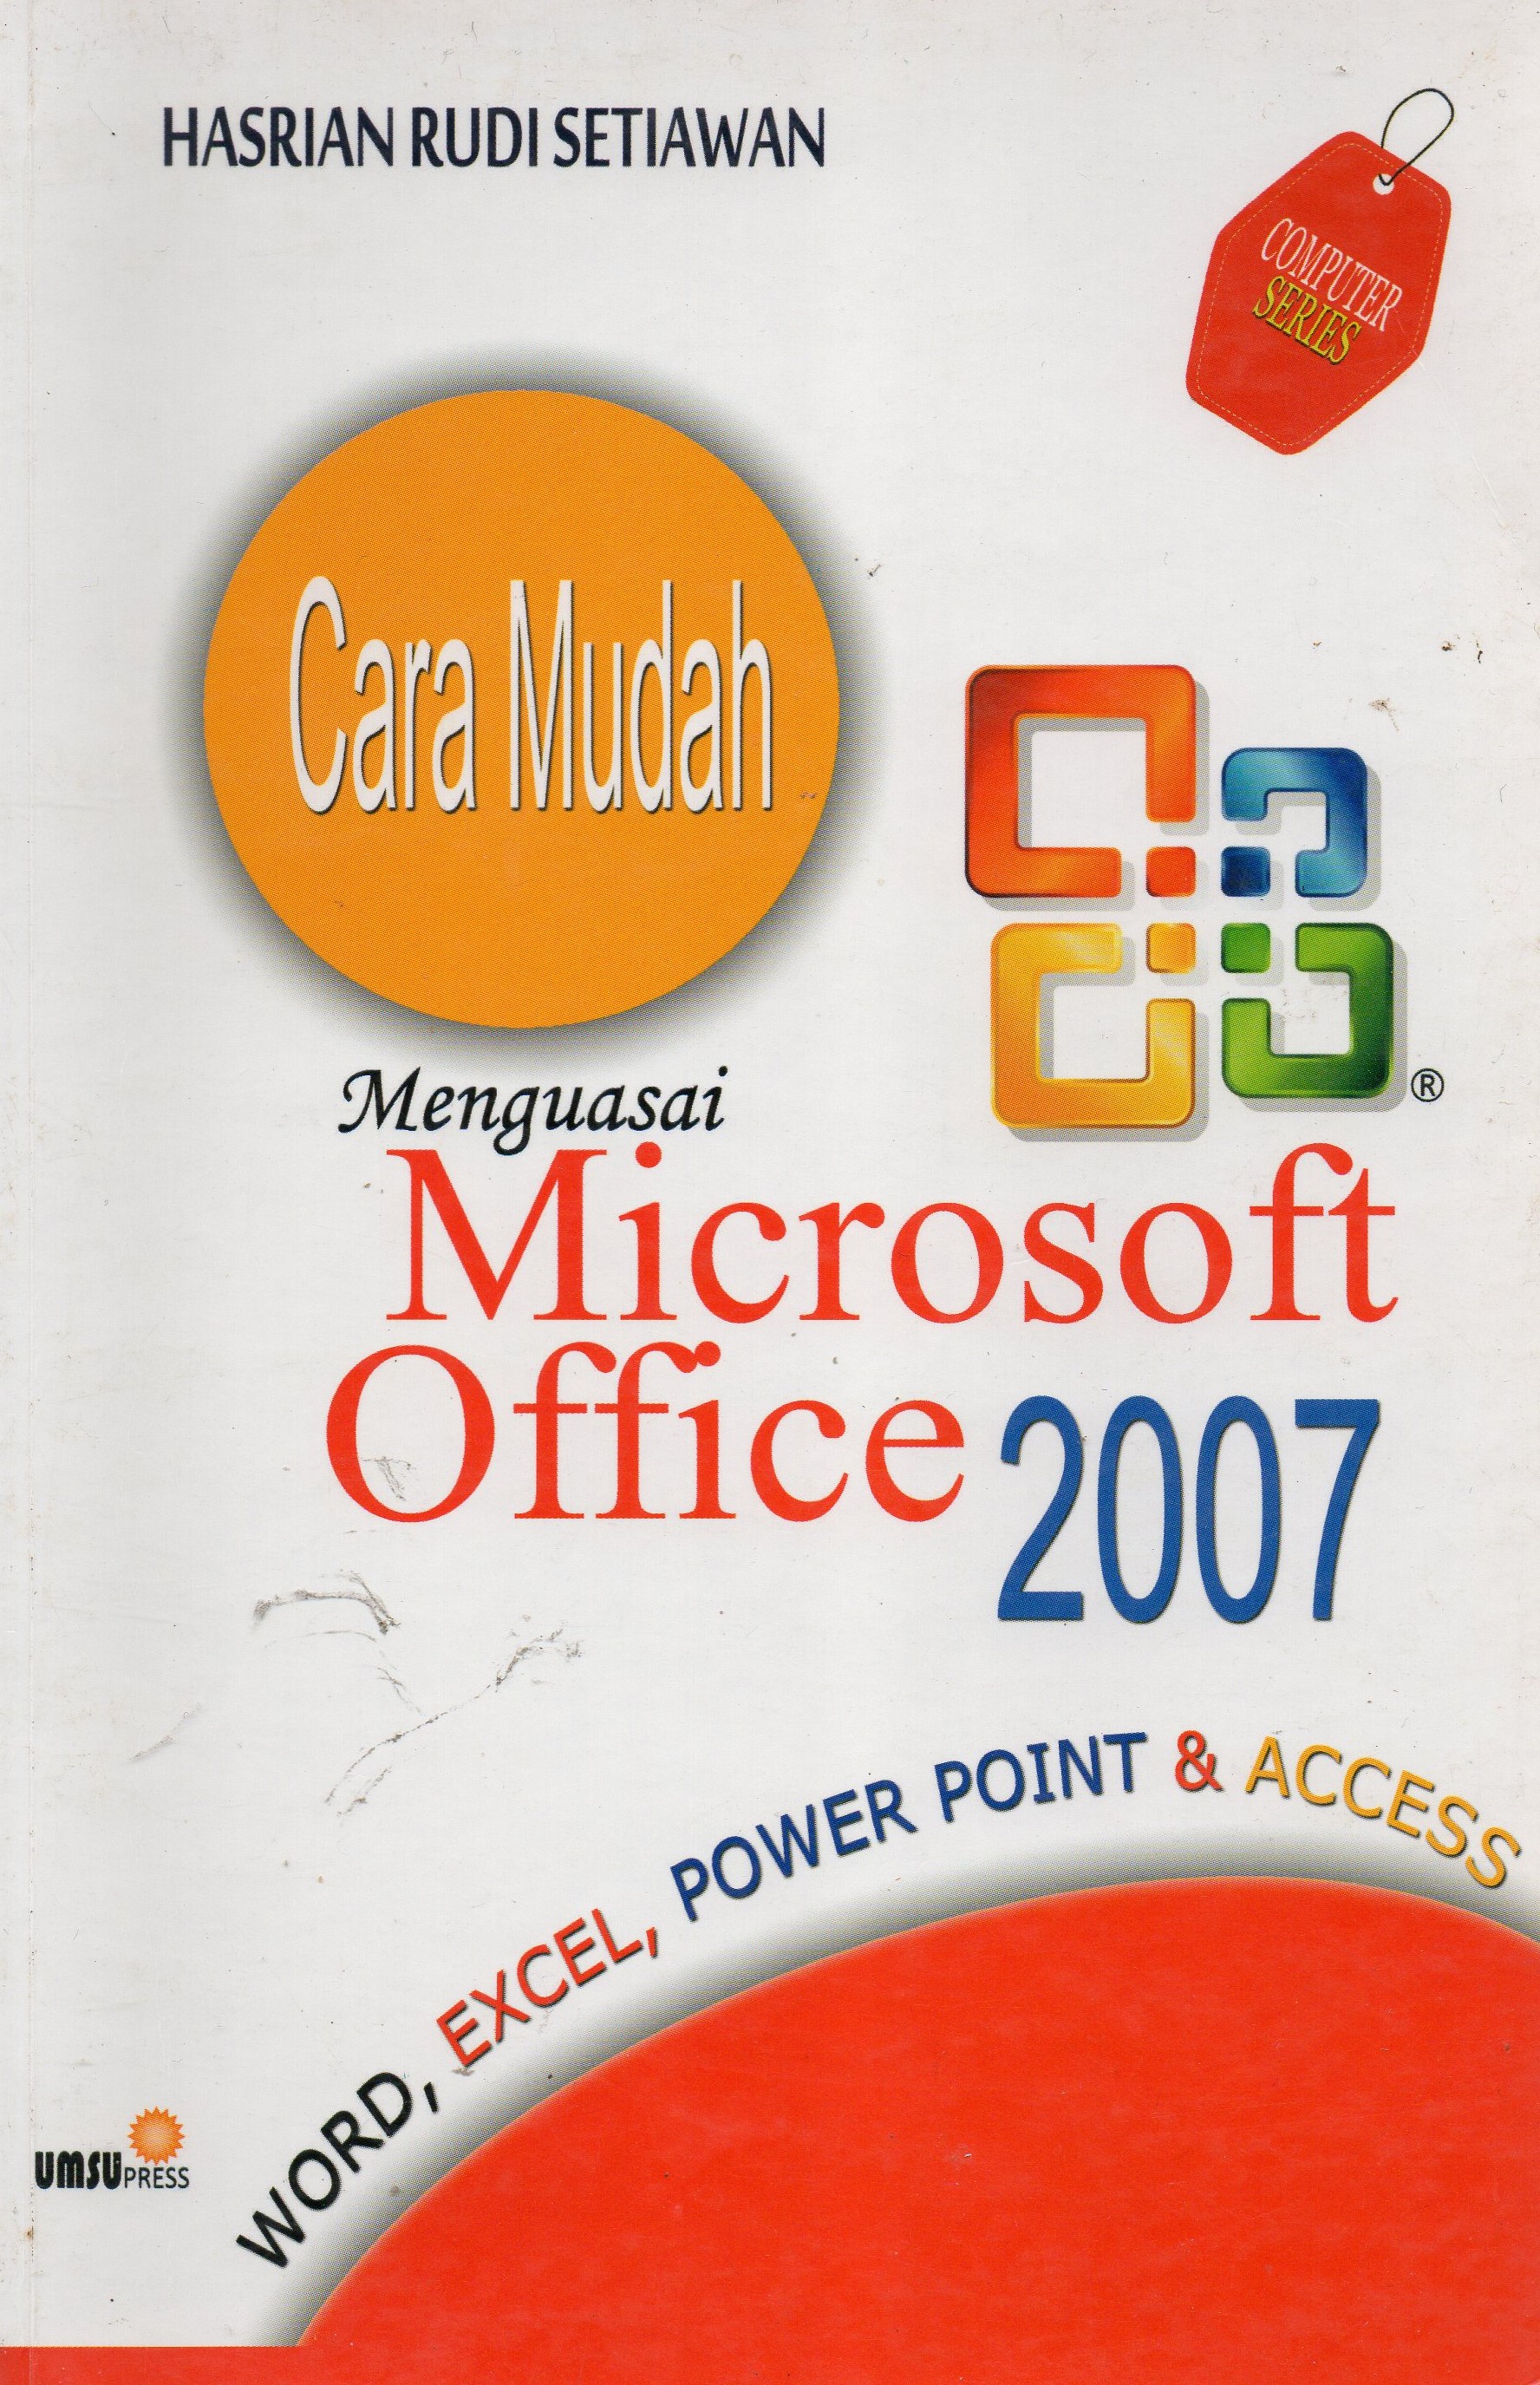 Cara mudah menguasai Microsoft office 2007